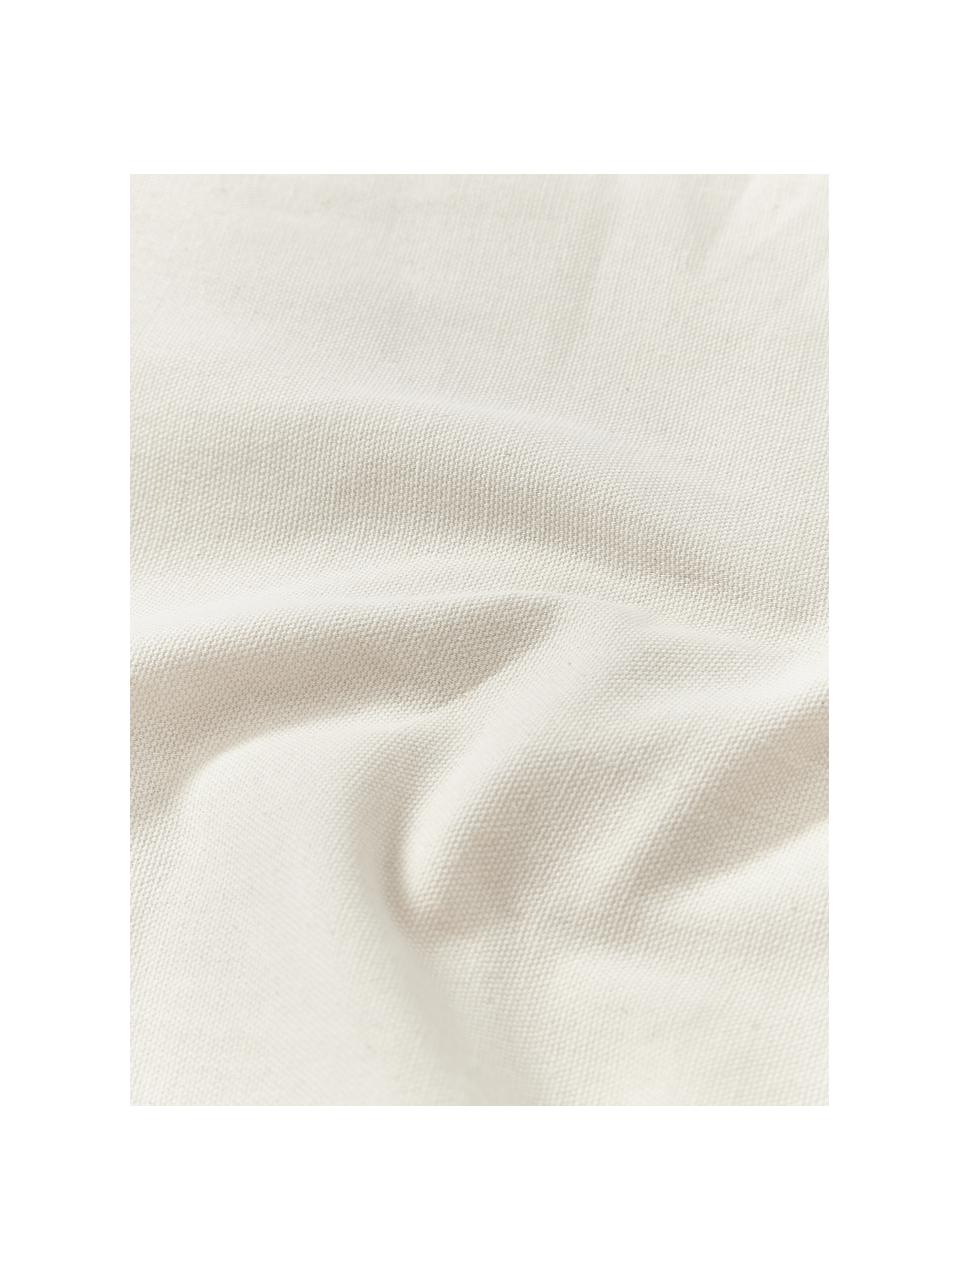 Baumwoll-Kissenhülle Sela mit getuftetem Pflanzen-Motiv, 100 % Baumwolle, Grün, Cremeweiß, B 45 x L 45 cm